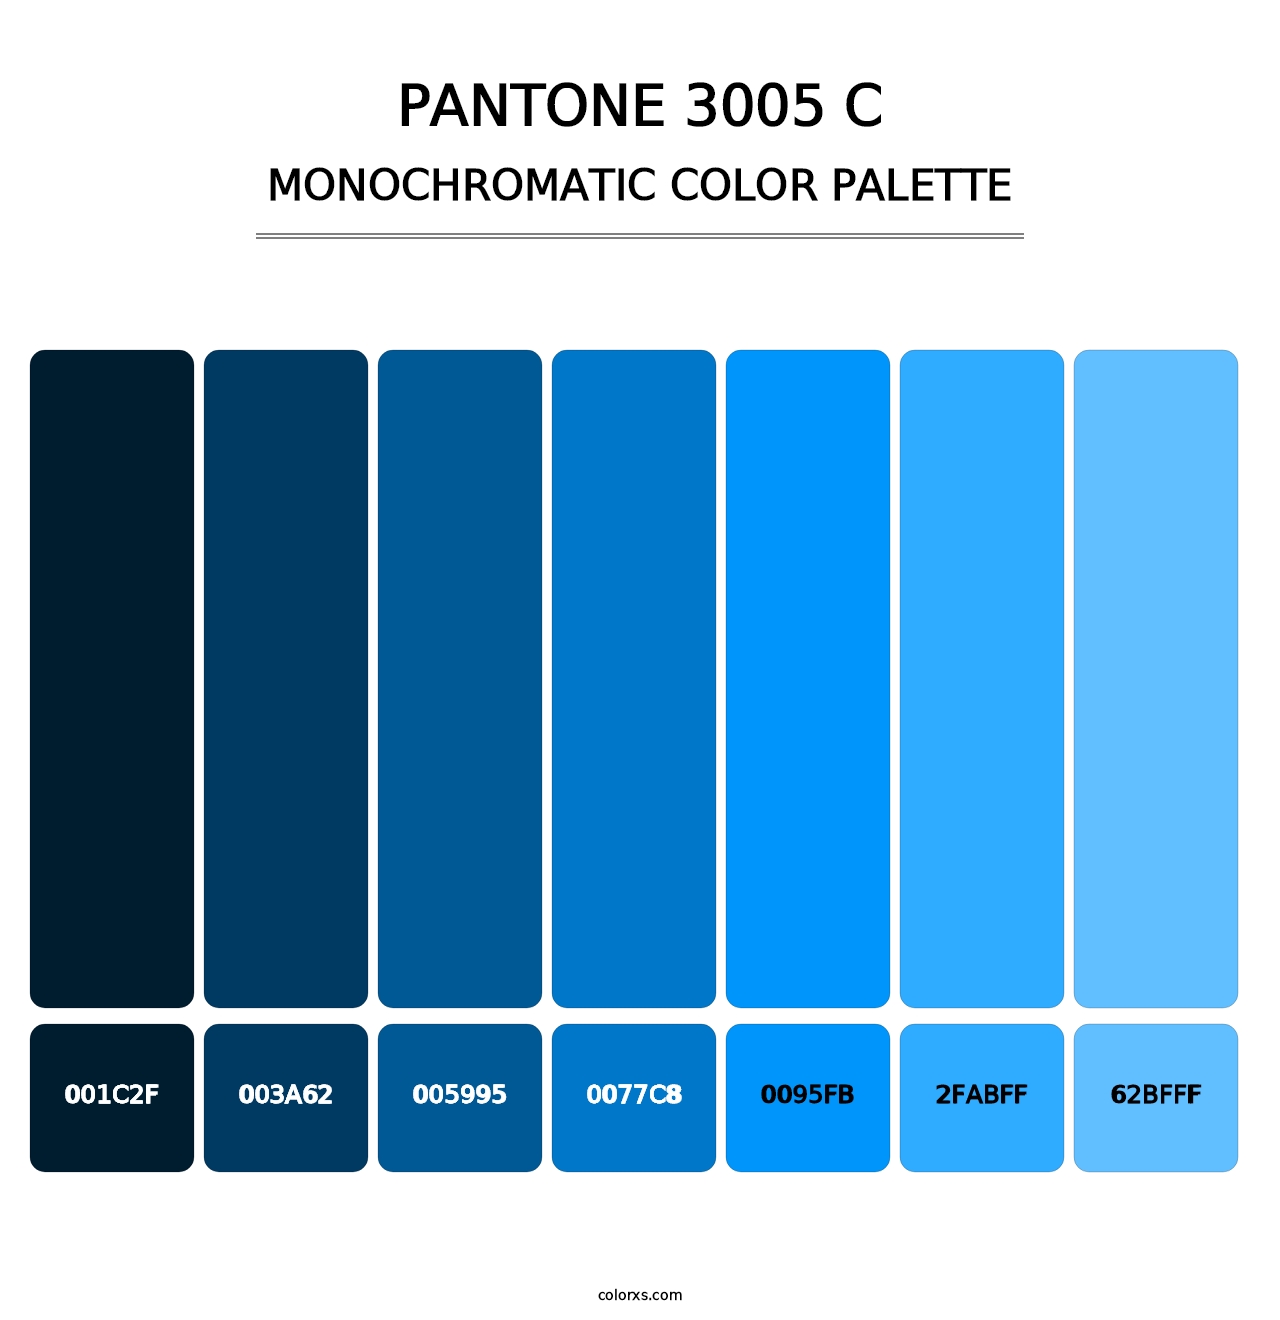 PANTONE 3005 C - Monochromatic Color Palette